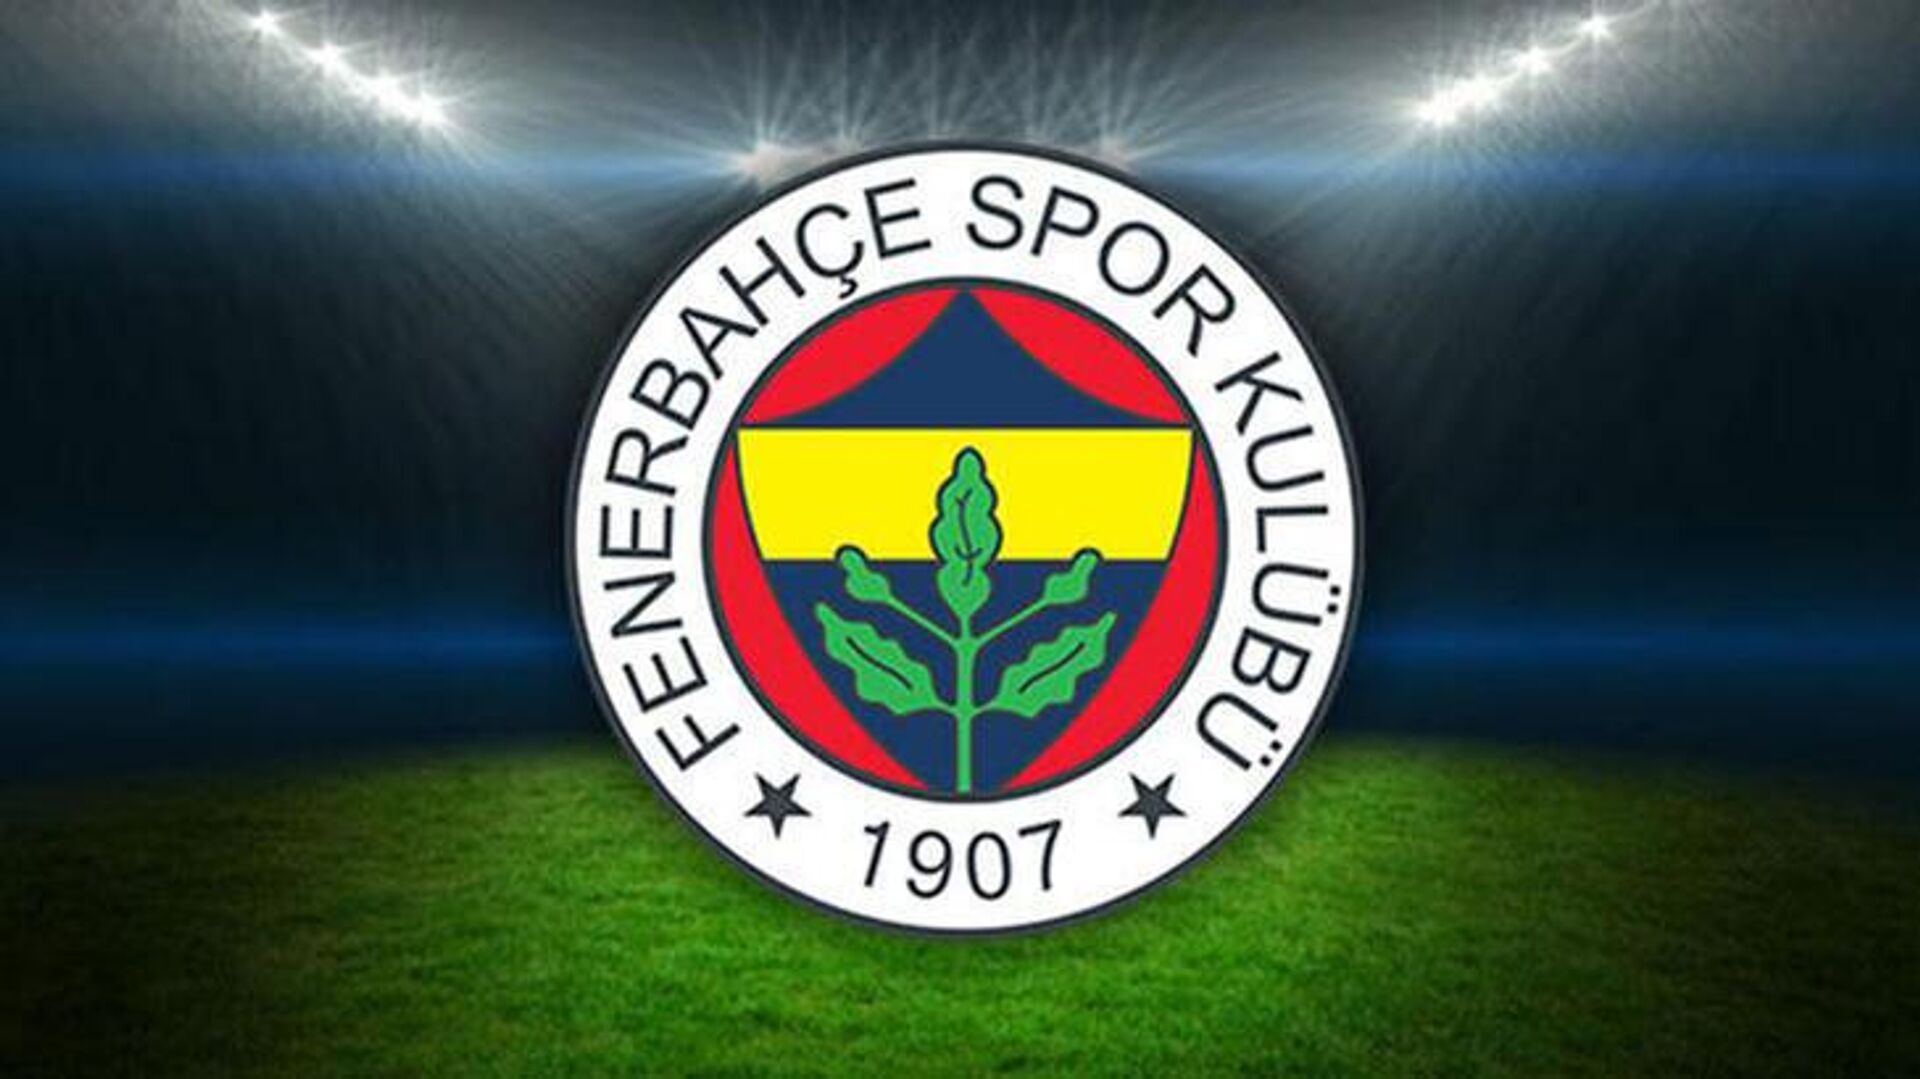 Fenerbahçe den 1959 öncesi şampiyonluklar için açıklama!